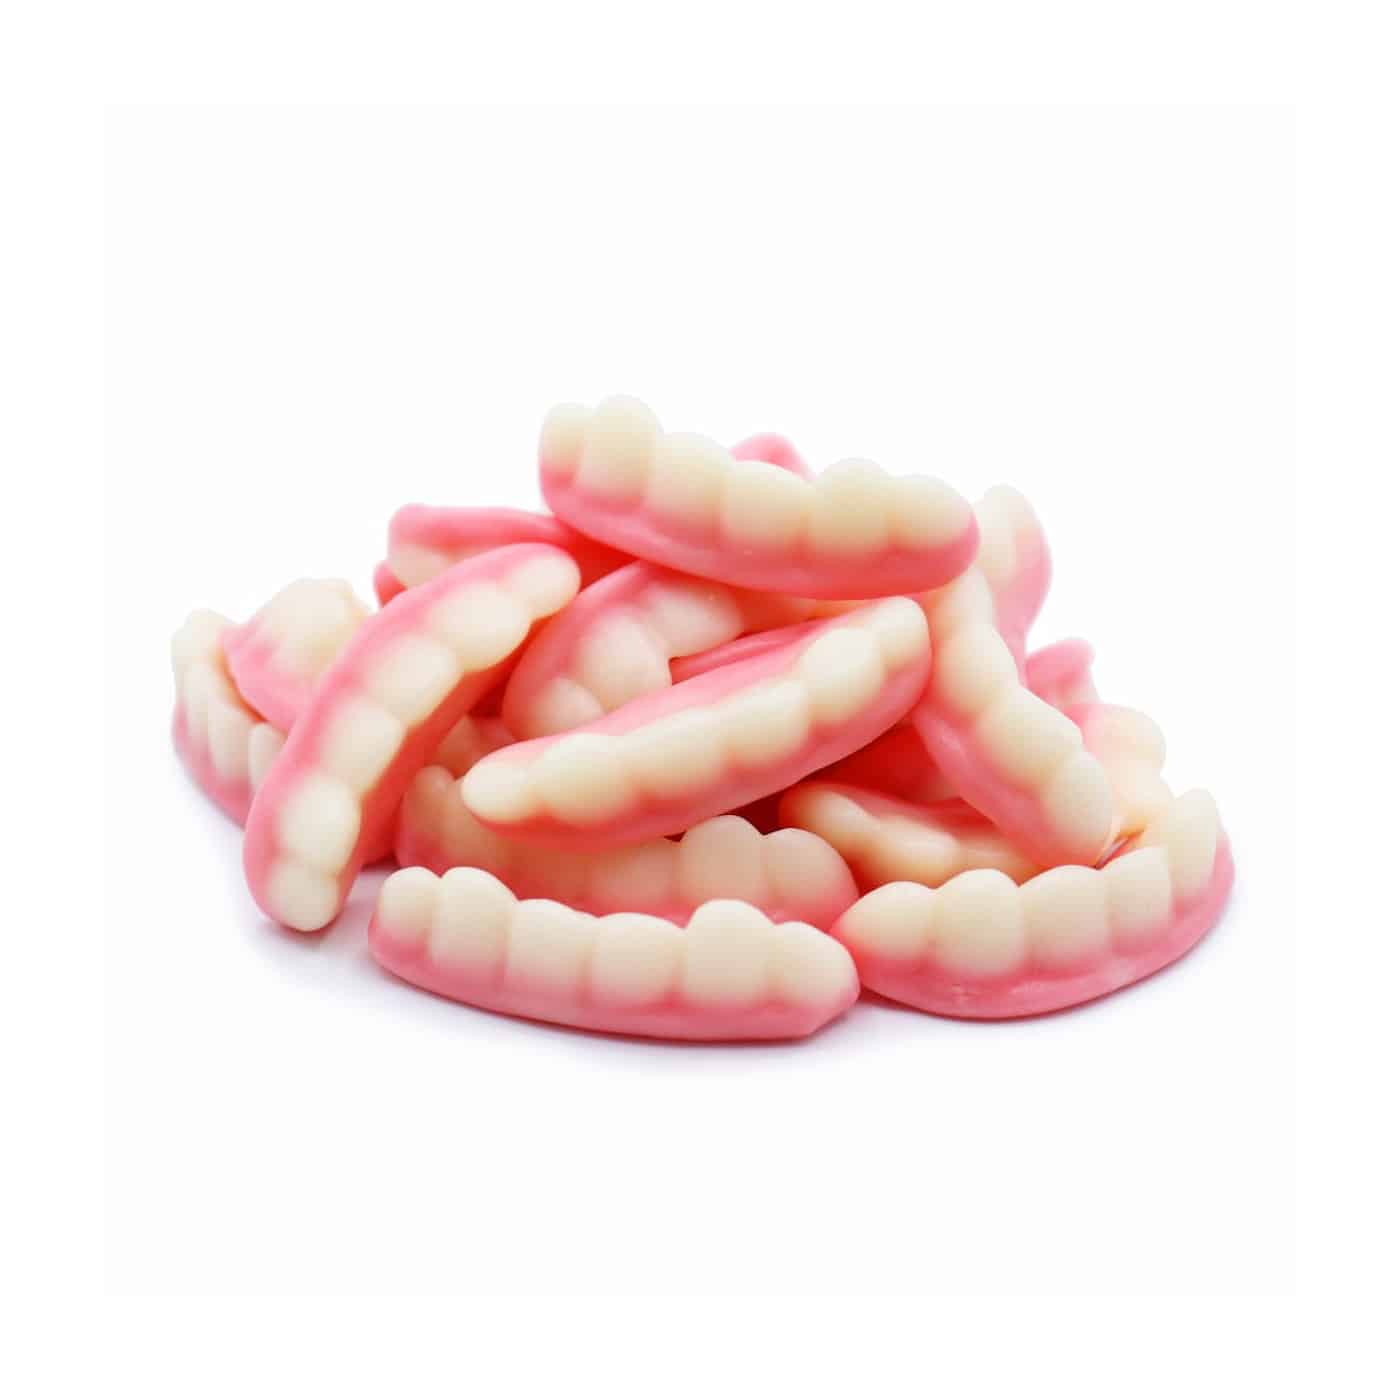 Gummy teeth - Swedish Godis Shop - Swedish Candy Shop